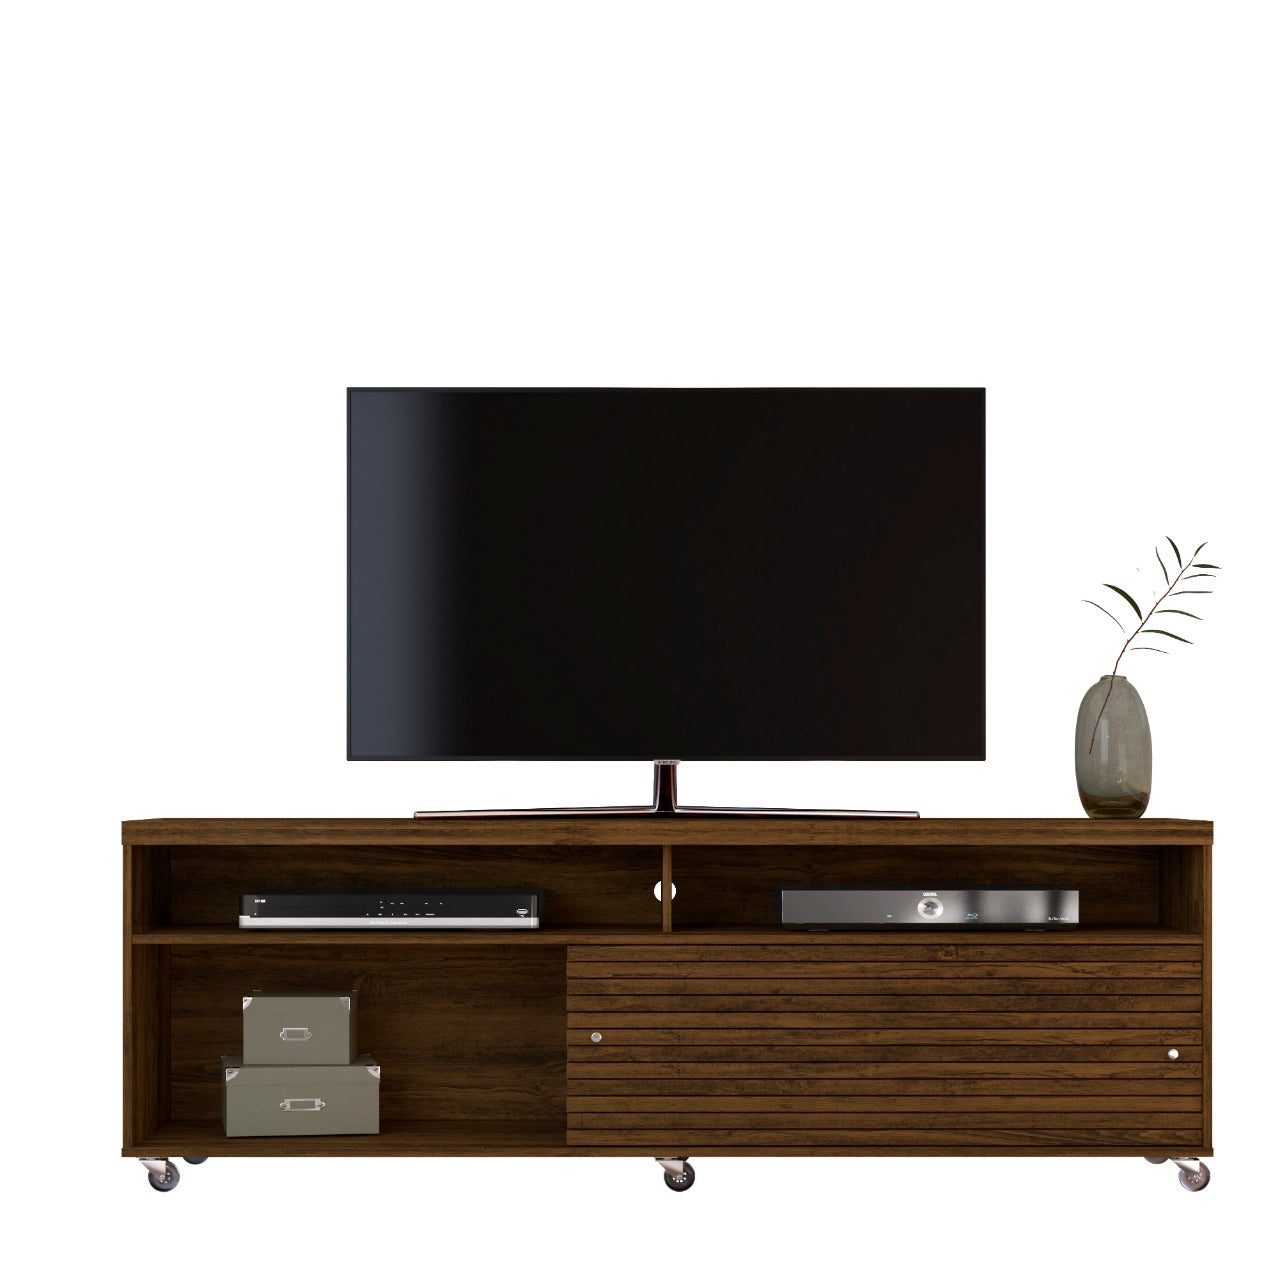 Mueble moderno para TV tipo gabinete con espacio de guardado Cross 180 cm (65")